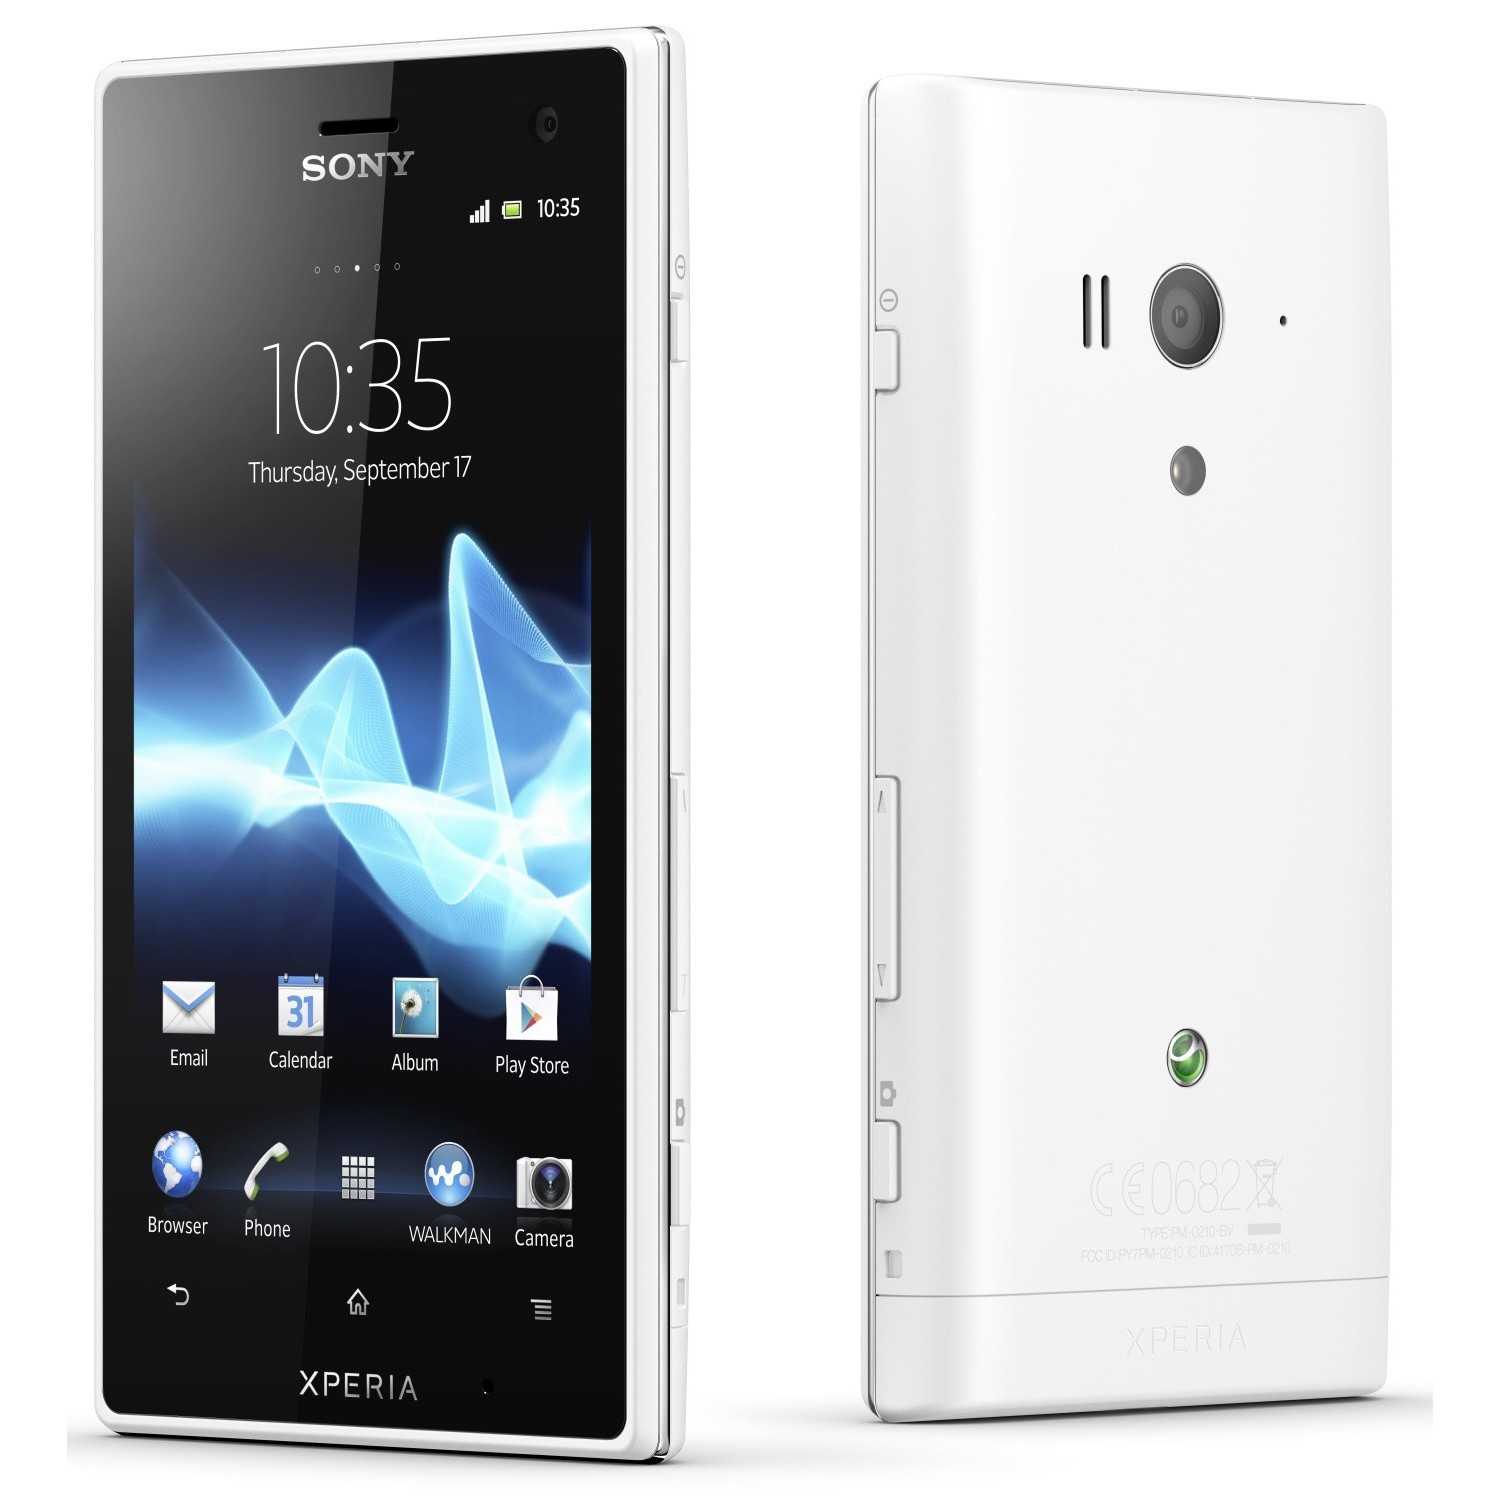 Sony xperia acro s lt26w (белый) - купить , скидки, цена, отзывы, обзор, характеристики - мобильные телефоны